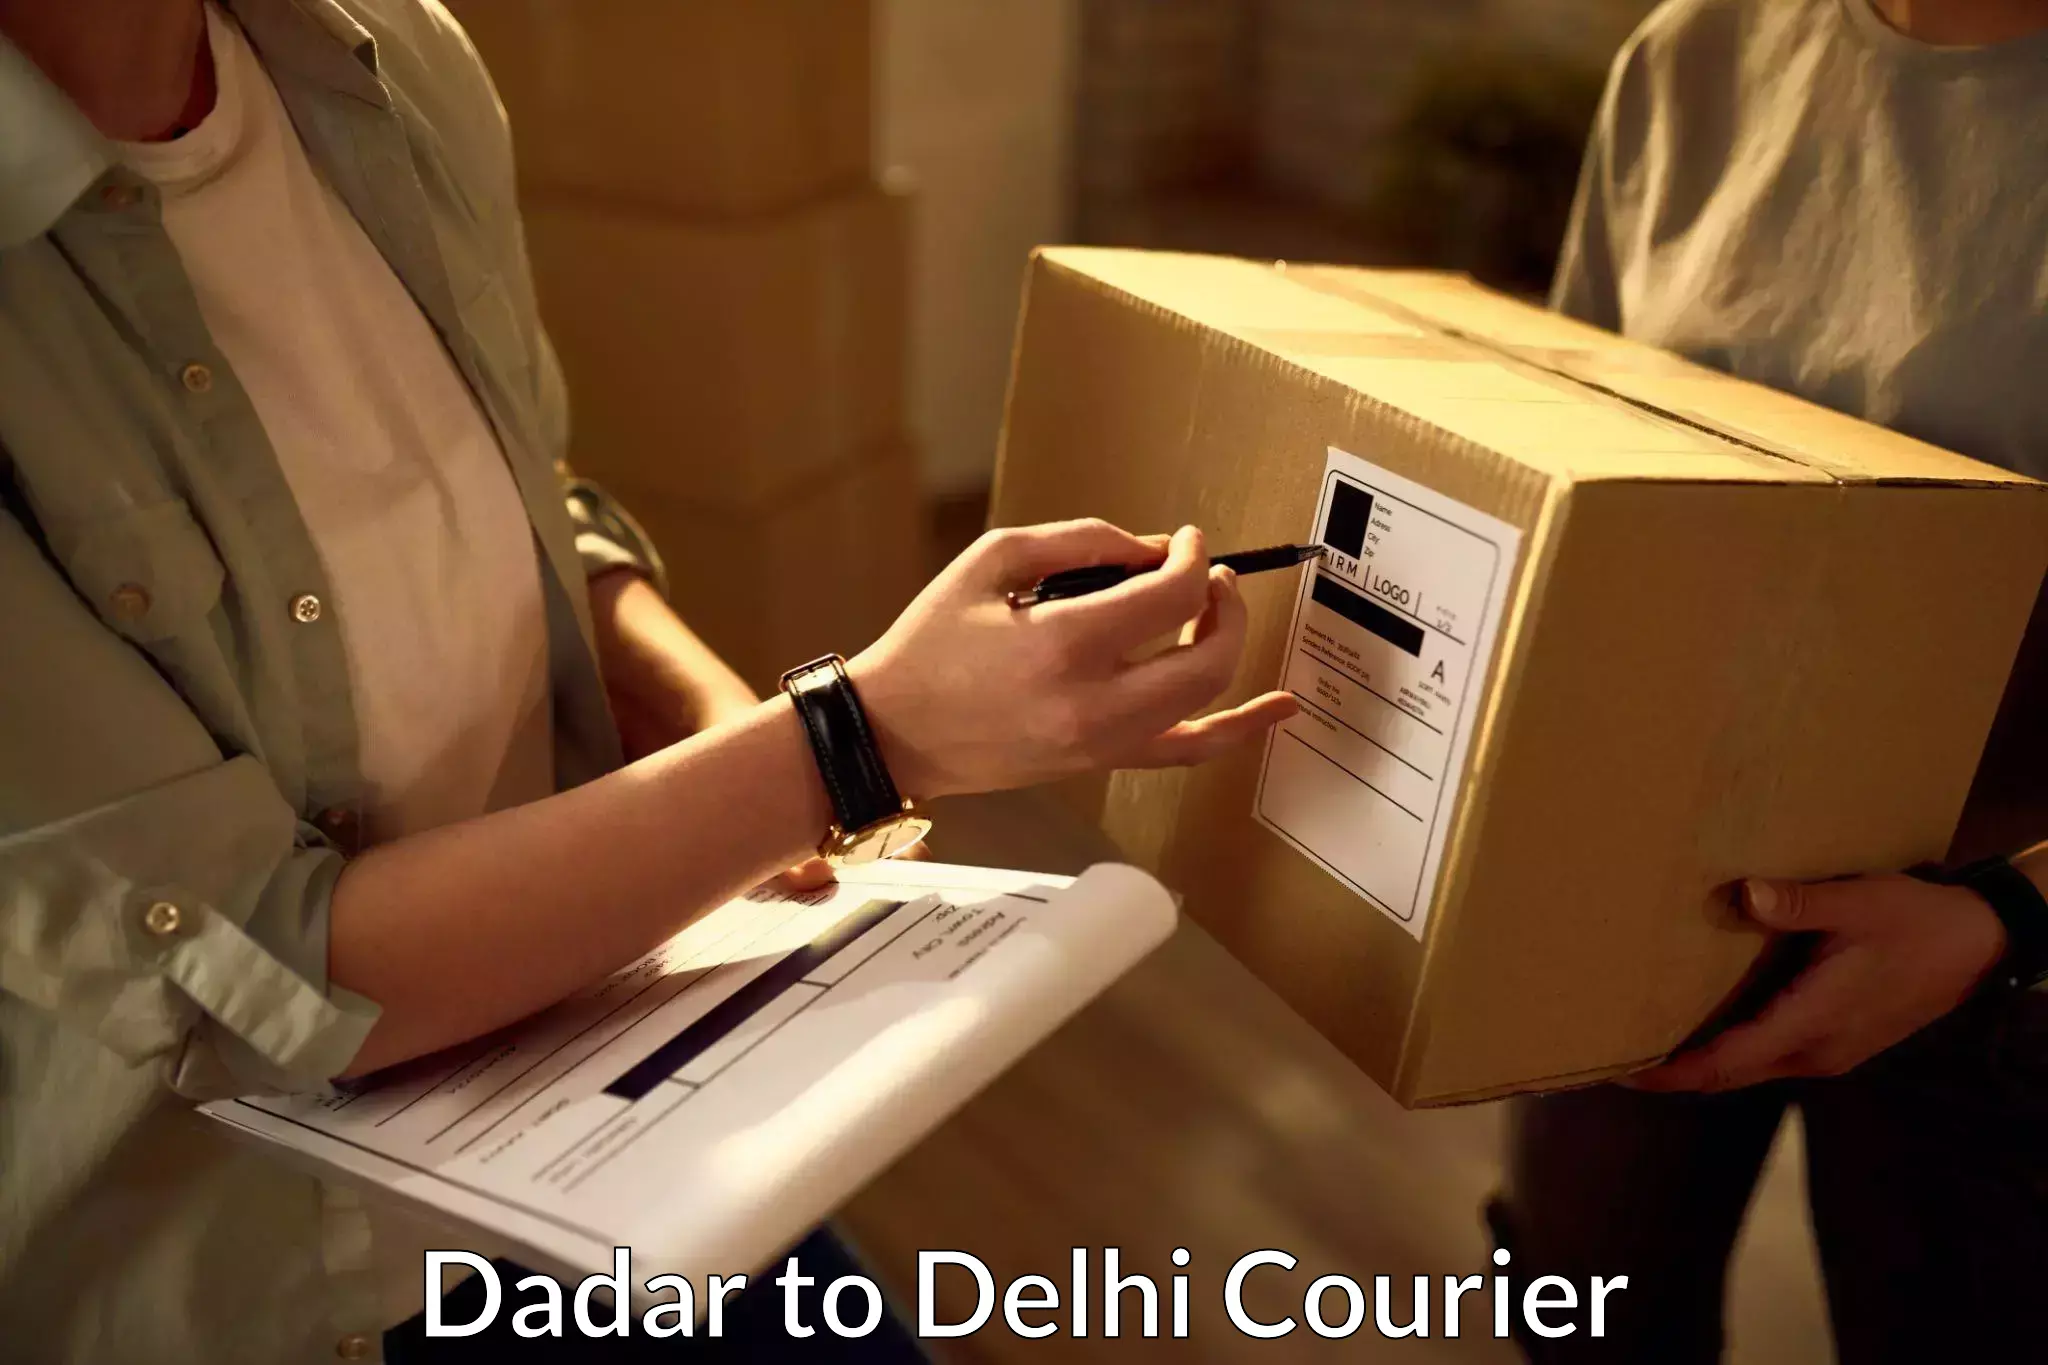 Cash on delivery service Dadar to Kalkaji